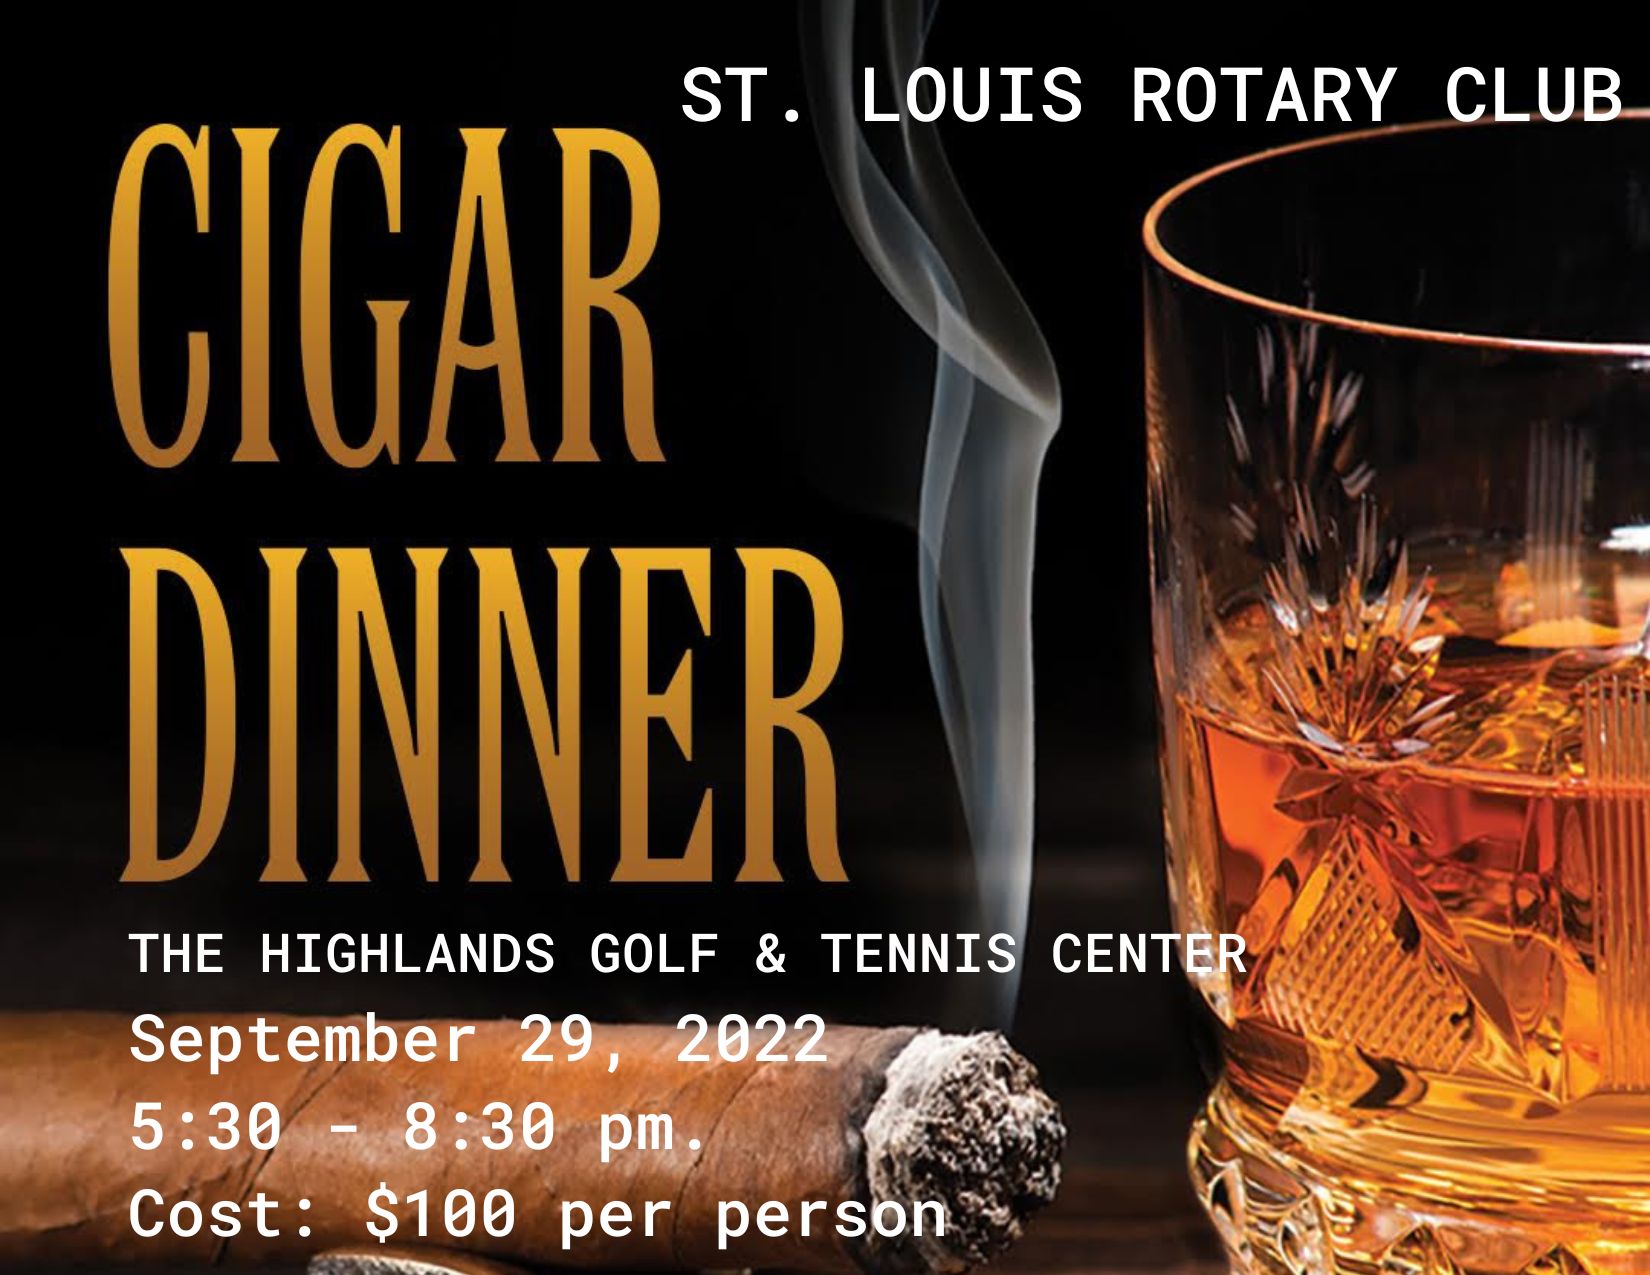 Cigar Dinner Fundraiser 9-29-22 5:30pm-8:30pm